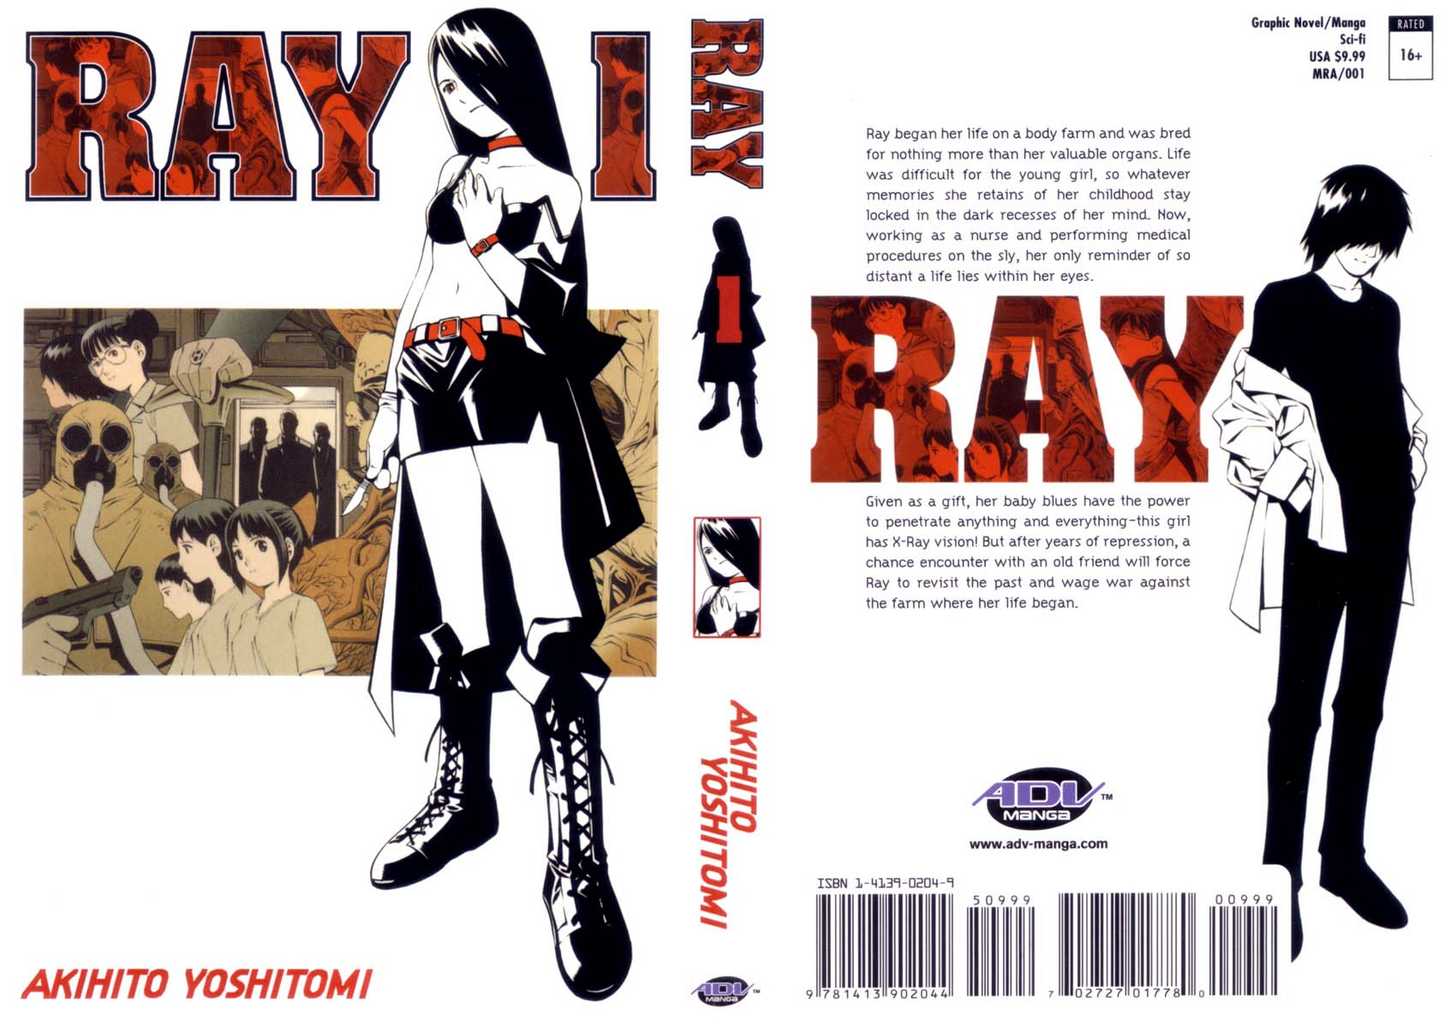 Ray 1